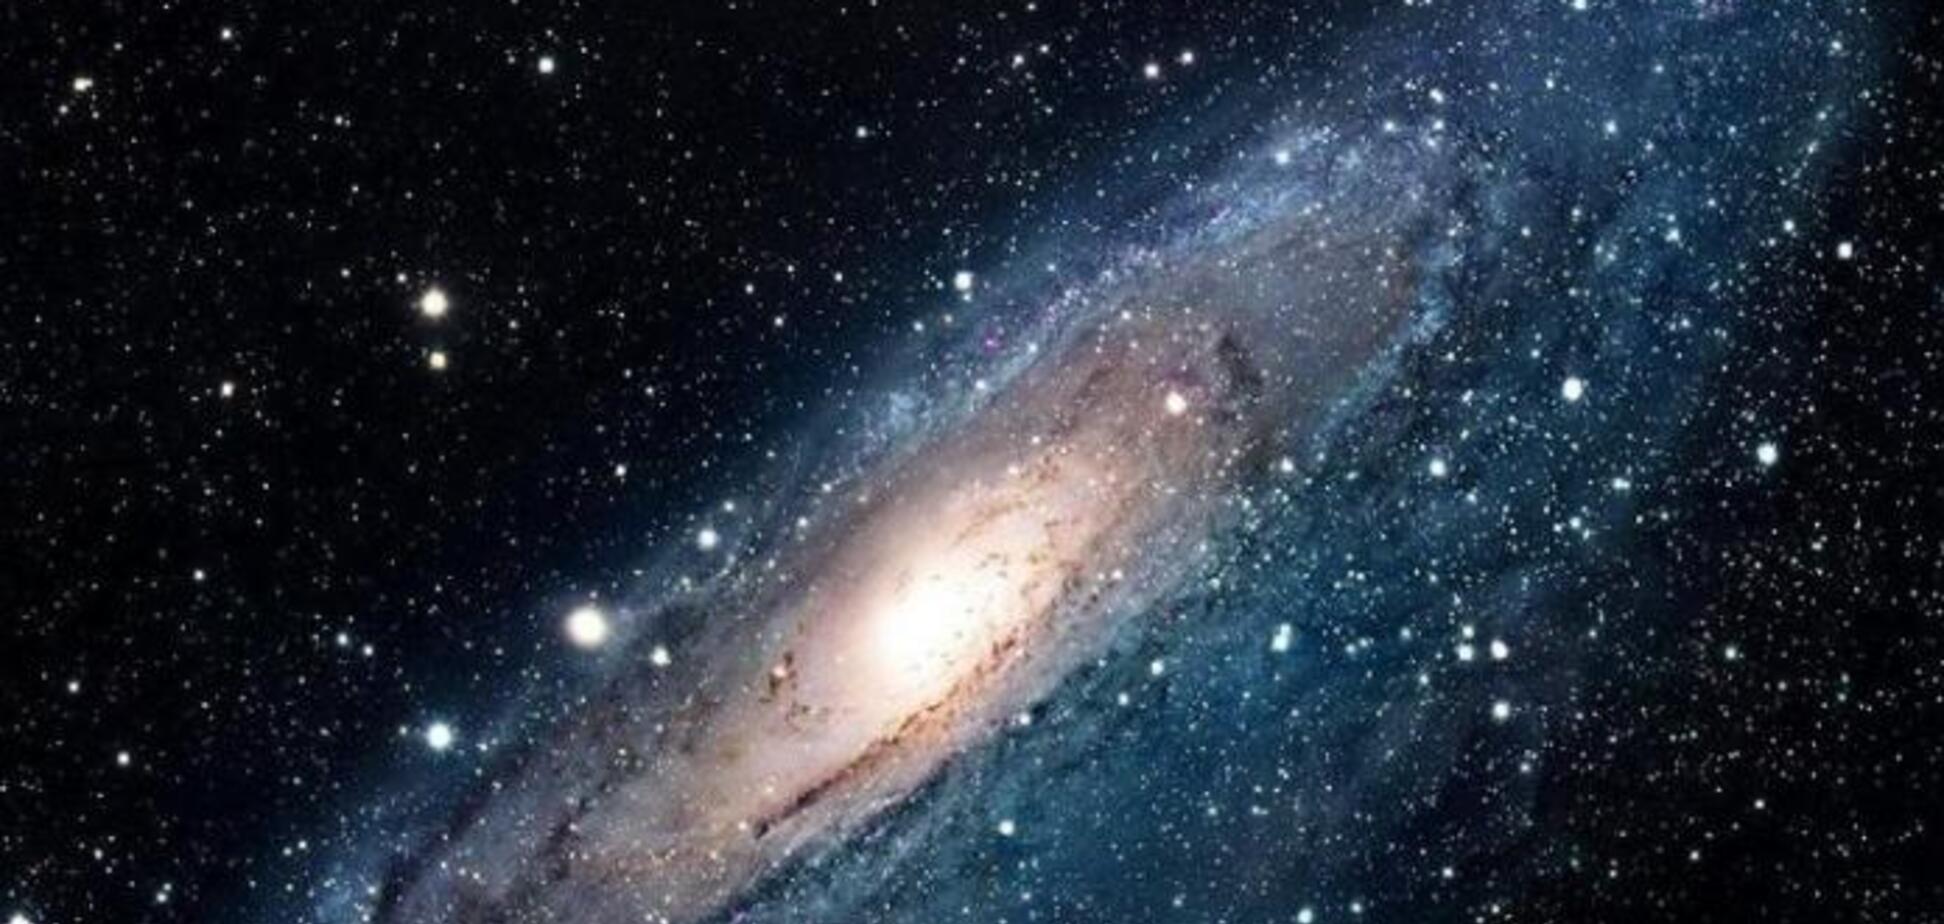 Галактика: виды и интересные факты. Шпаргалка для урока по астрономии